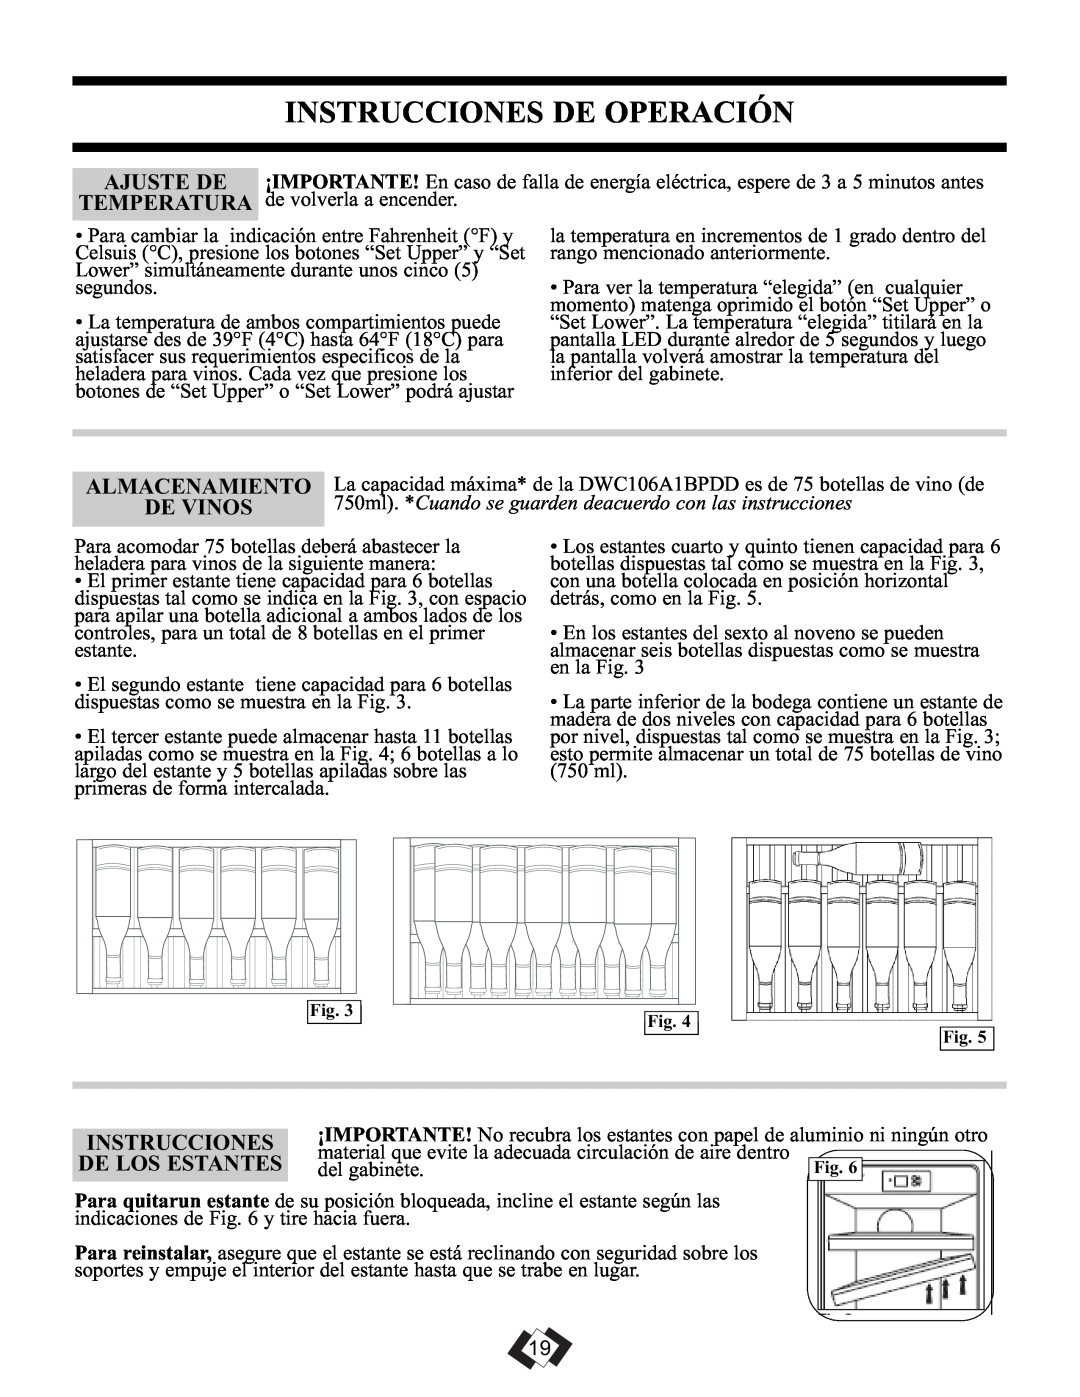 Danby DWC106A1BPDD manual Instrucciones De Operación, Almacenamiento, De Vinos, De Los Estantes 